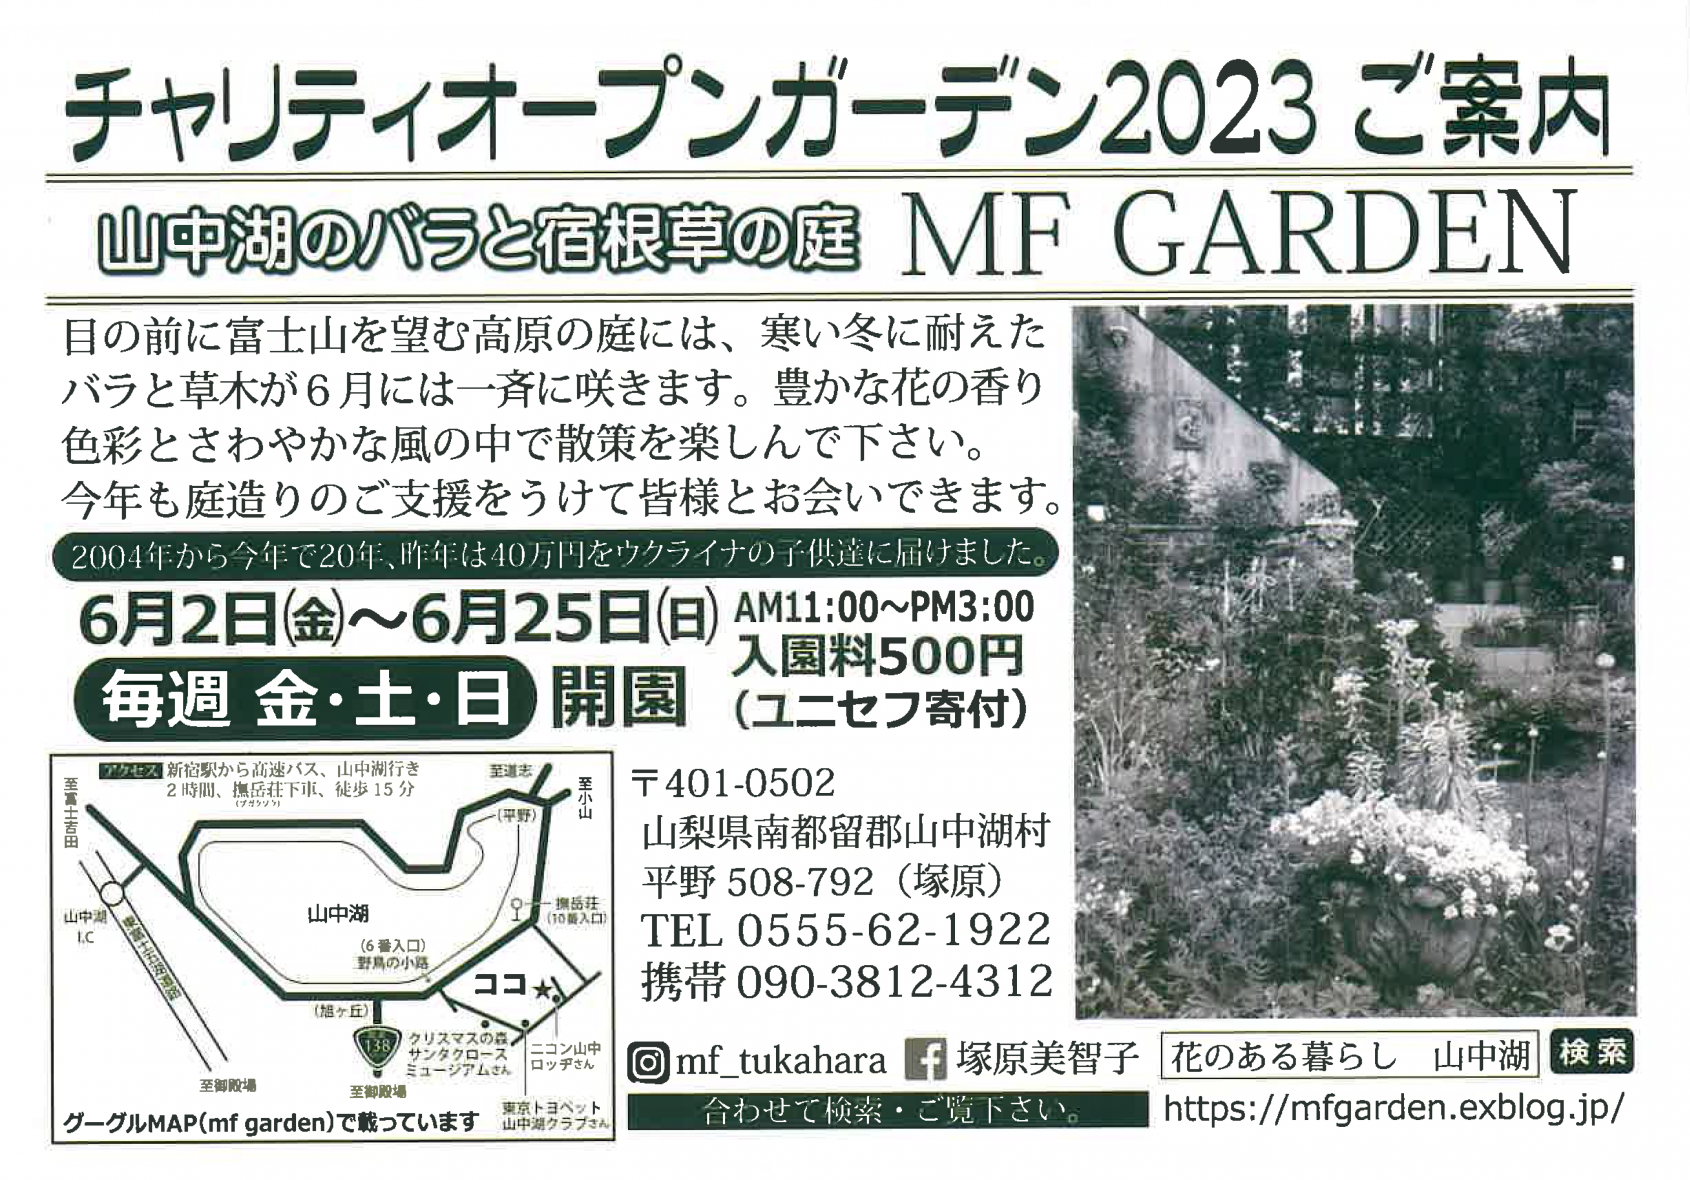 【MF GARDEN】チャリティオープンガーデン2023オープン-1